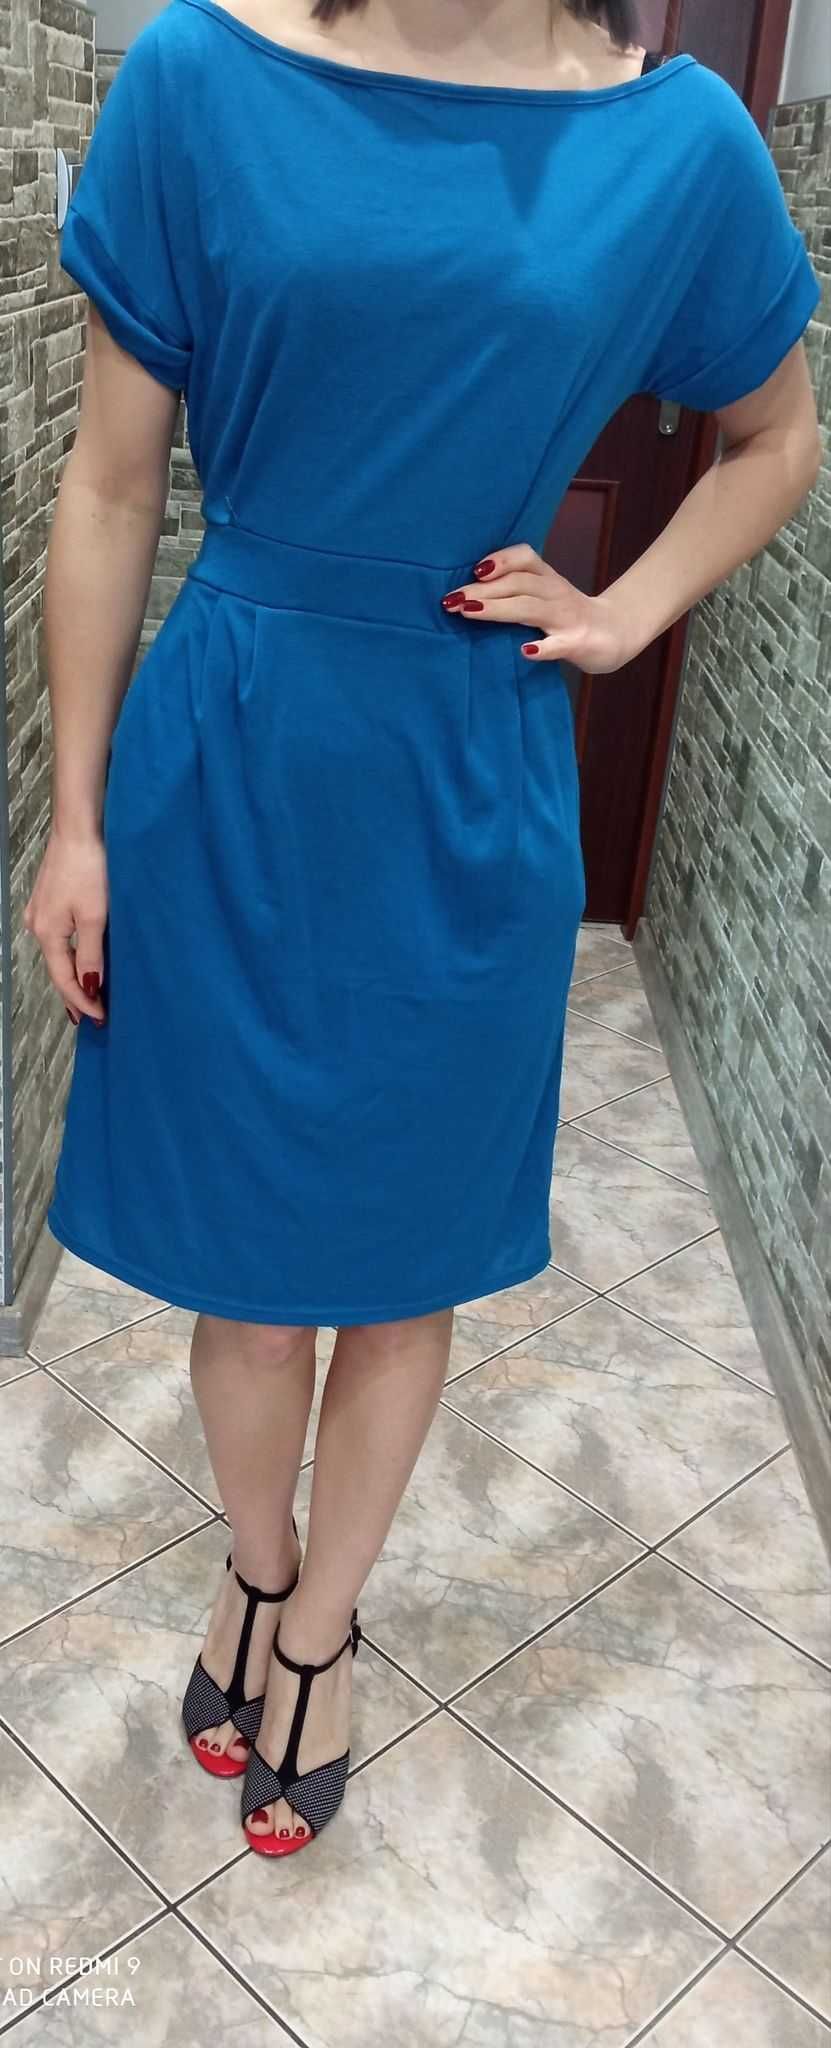 Piękna nowa letnia niebieska sukienka z krótkim rękawkiem.